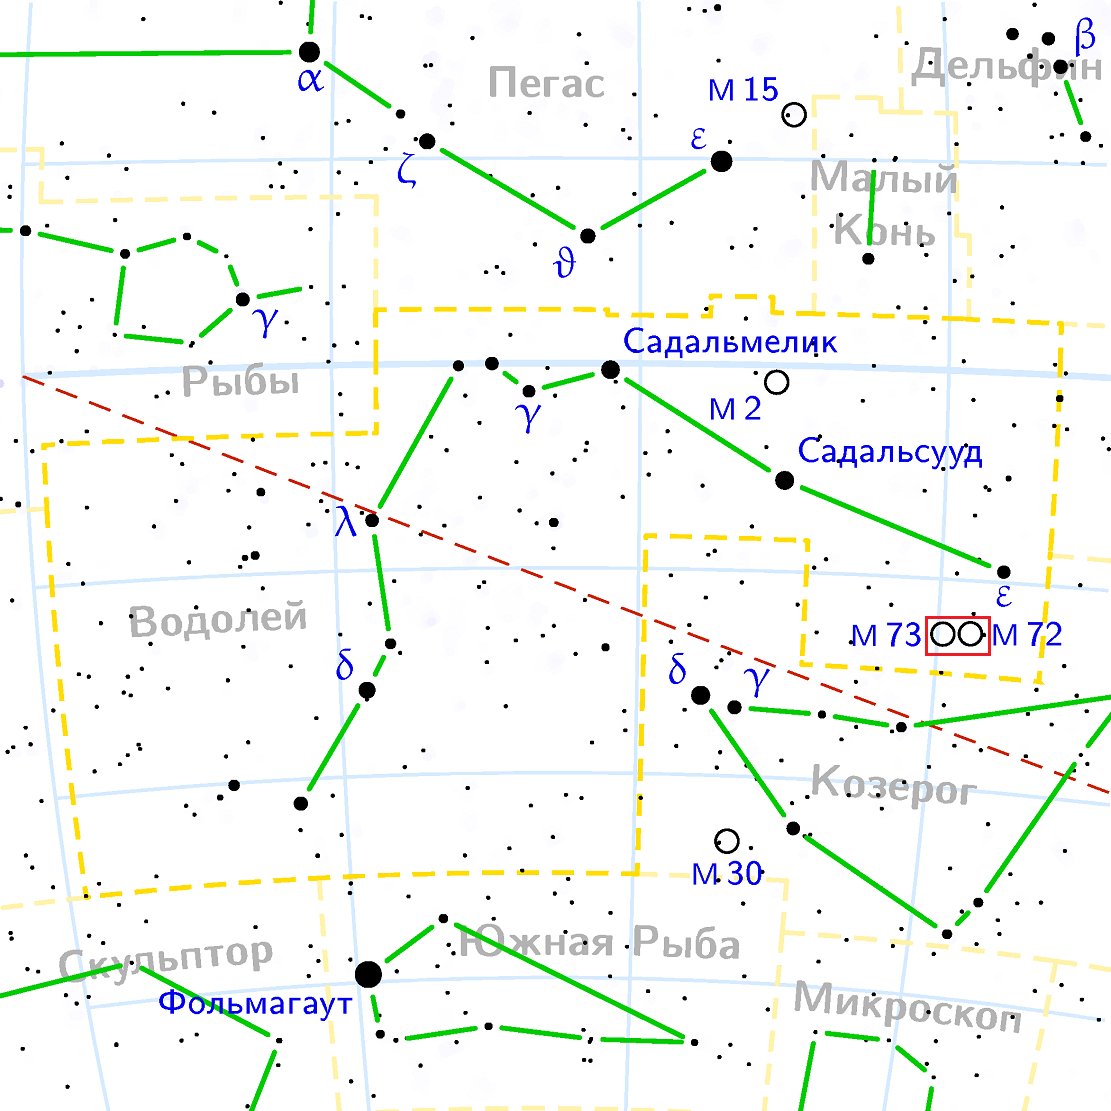 L'amas globulaire M72 et l'amas dispersé M73 dans la constellation du Verseau